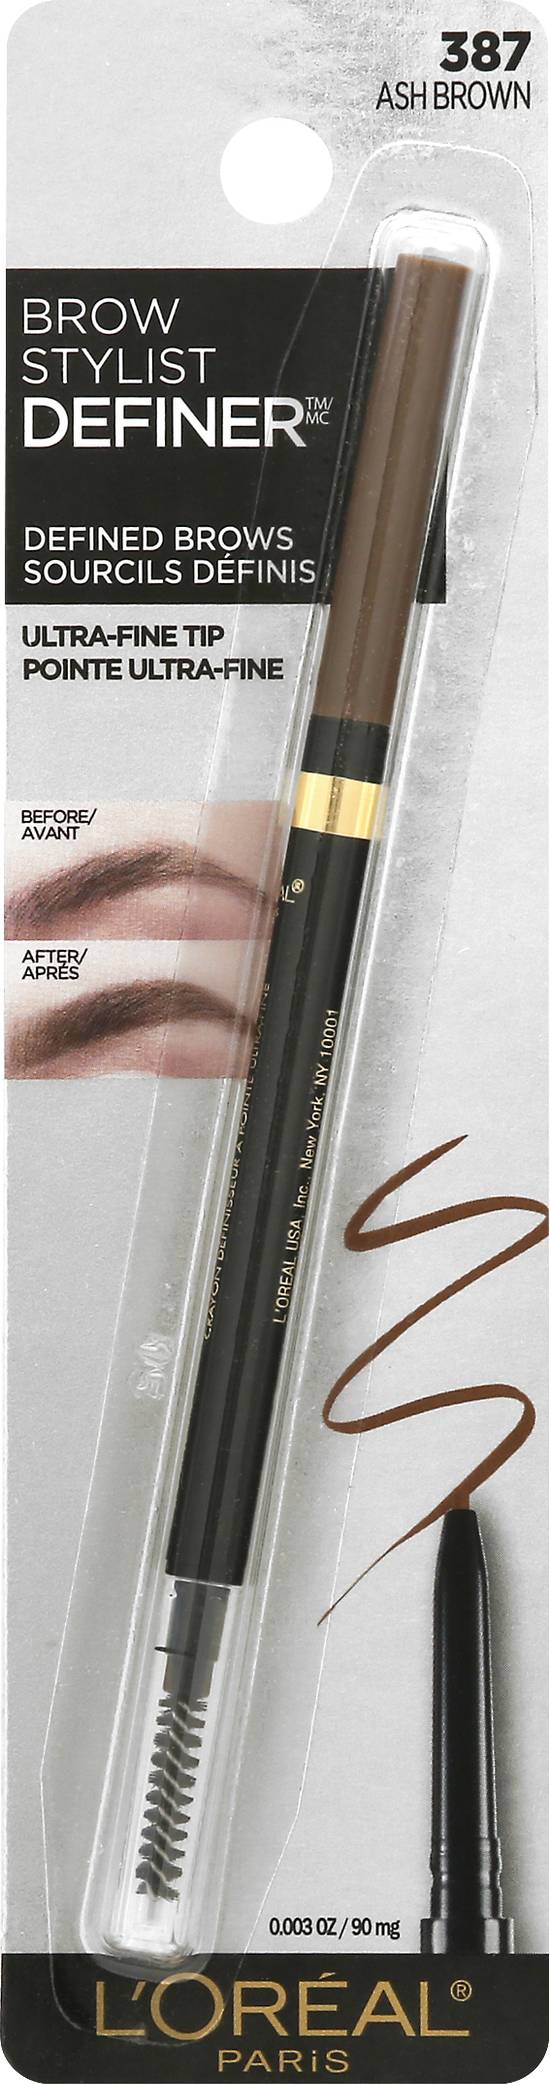 L'oréal Brow Stylist Definer 387 Ash Brown Eyebrow Pencil (1 ct)